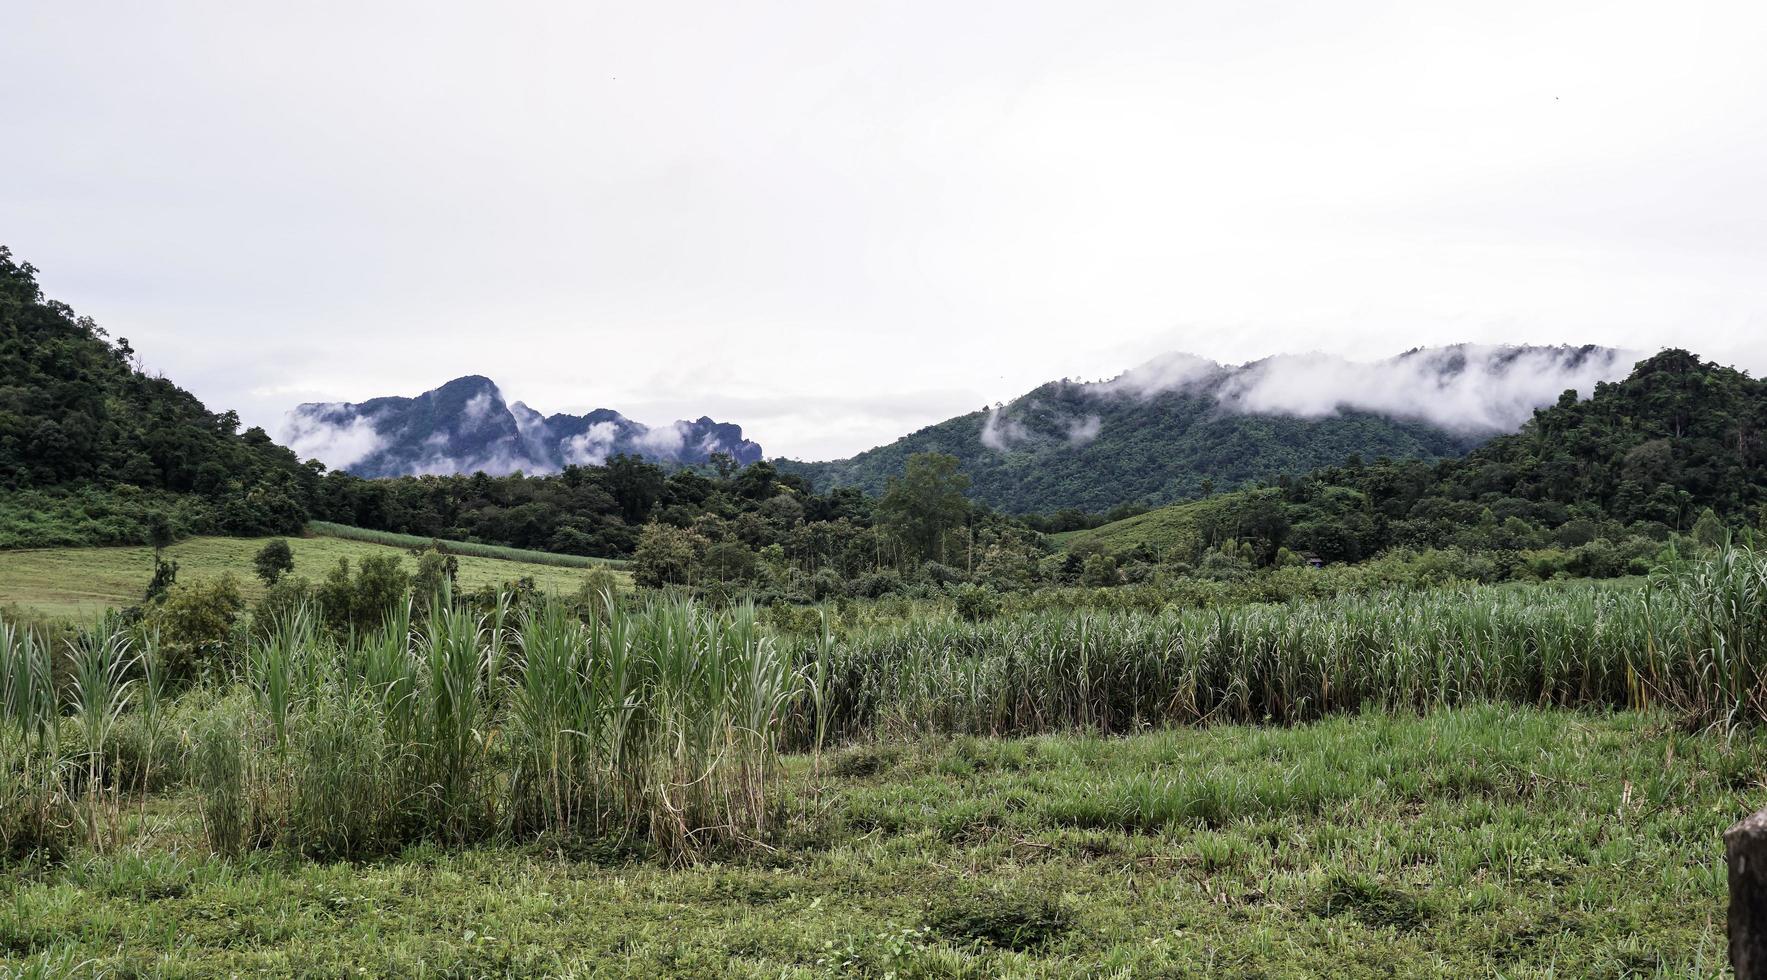 berge mit morgennebel sehen im bezirk phu kradueng in thailand schön und friedlich aus. foto